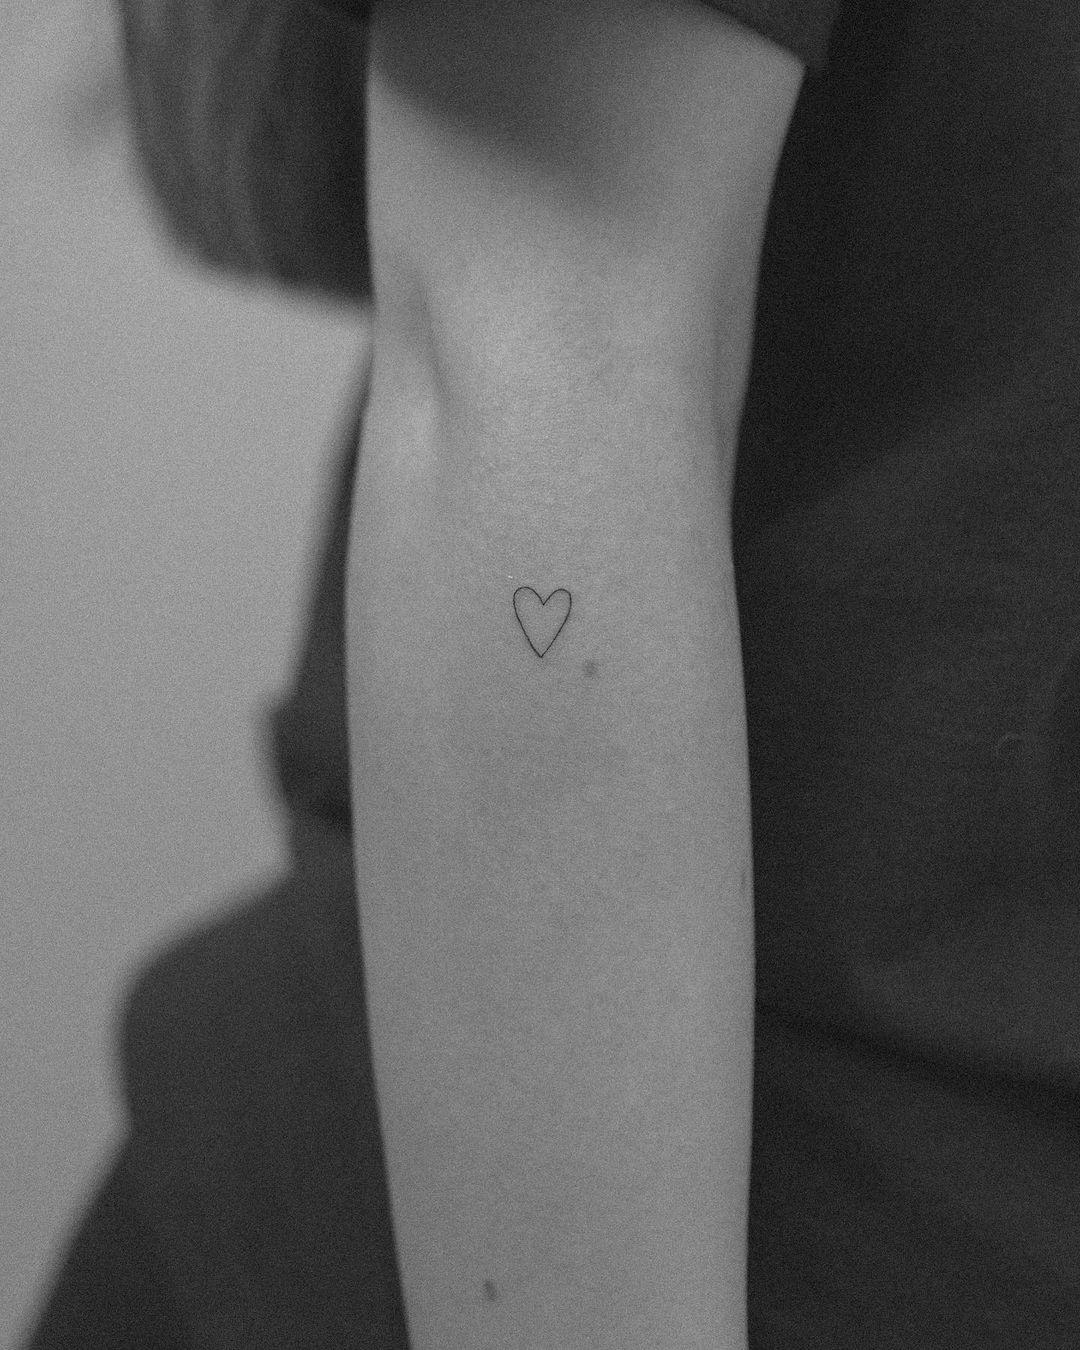 Tatuaje de silueta de corazón en el antebrazo